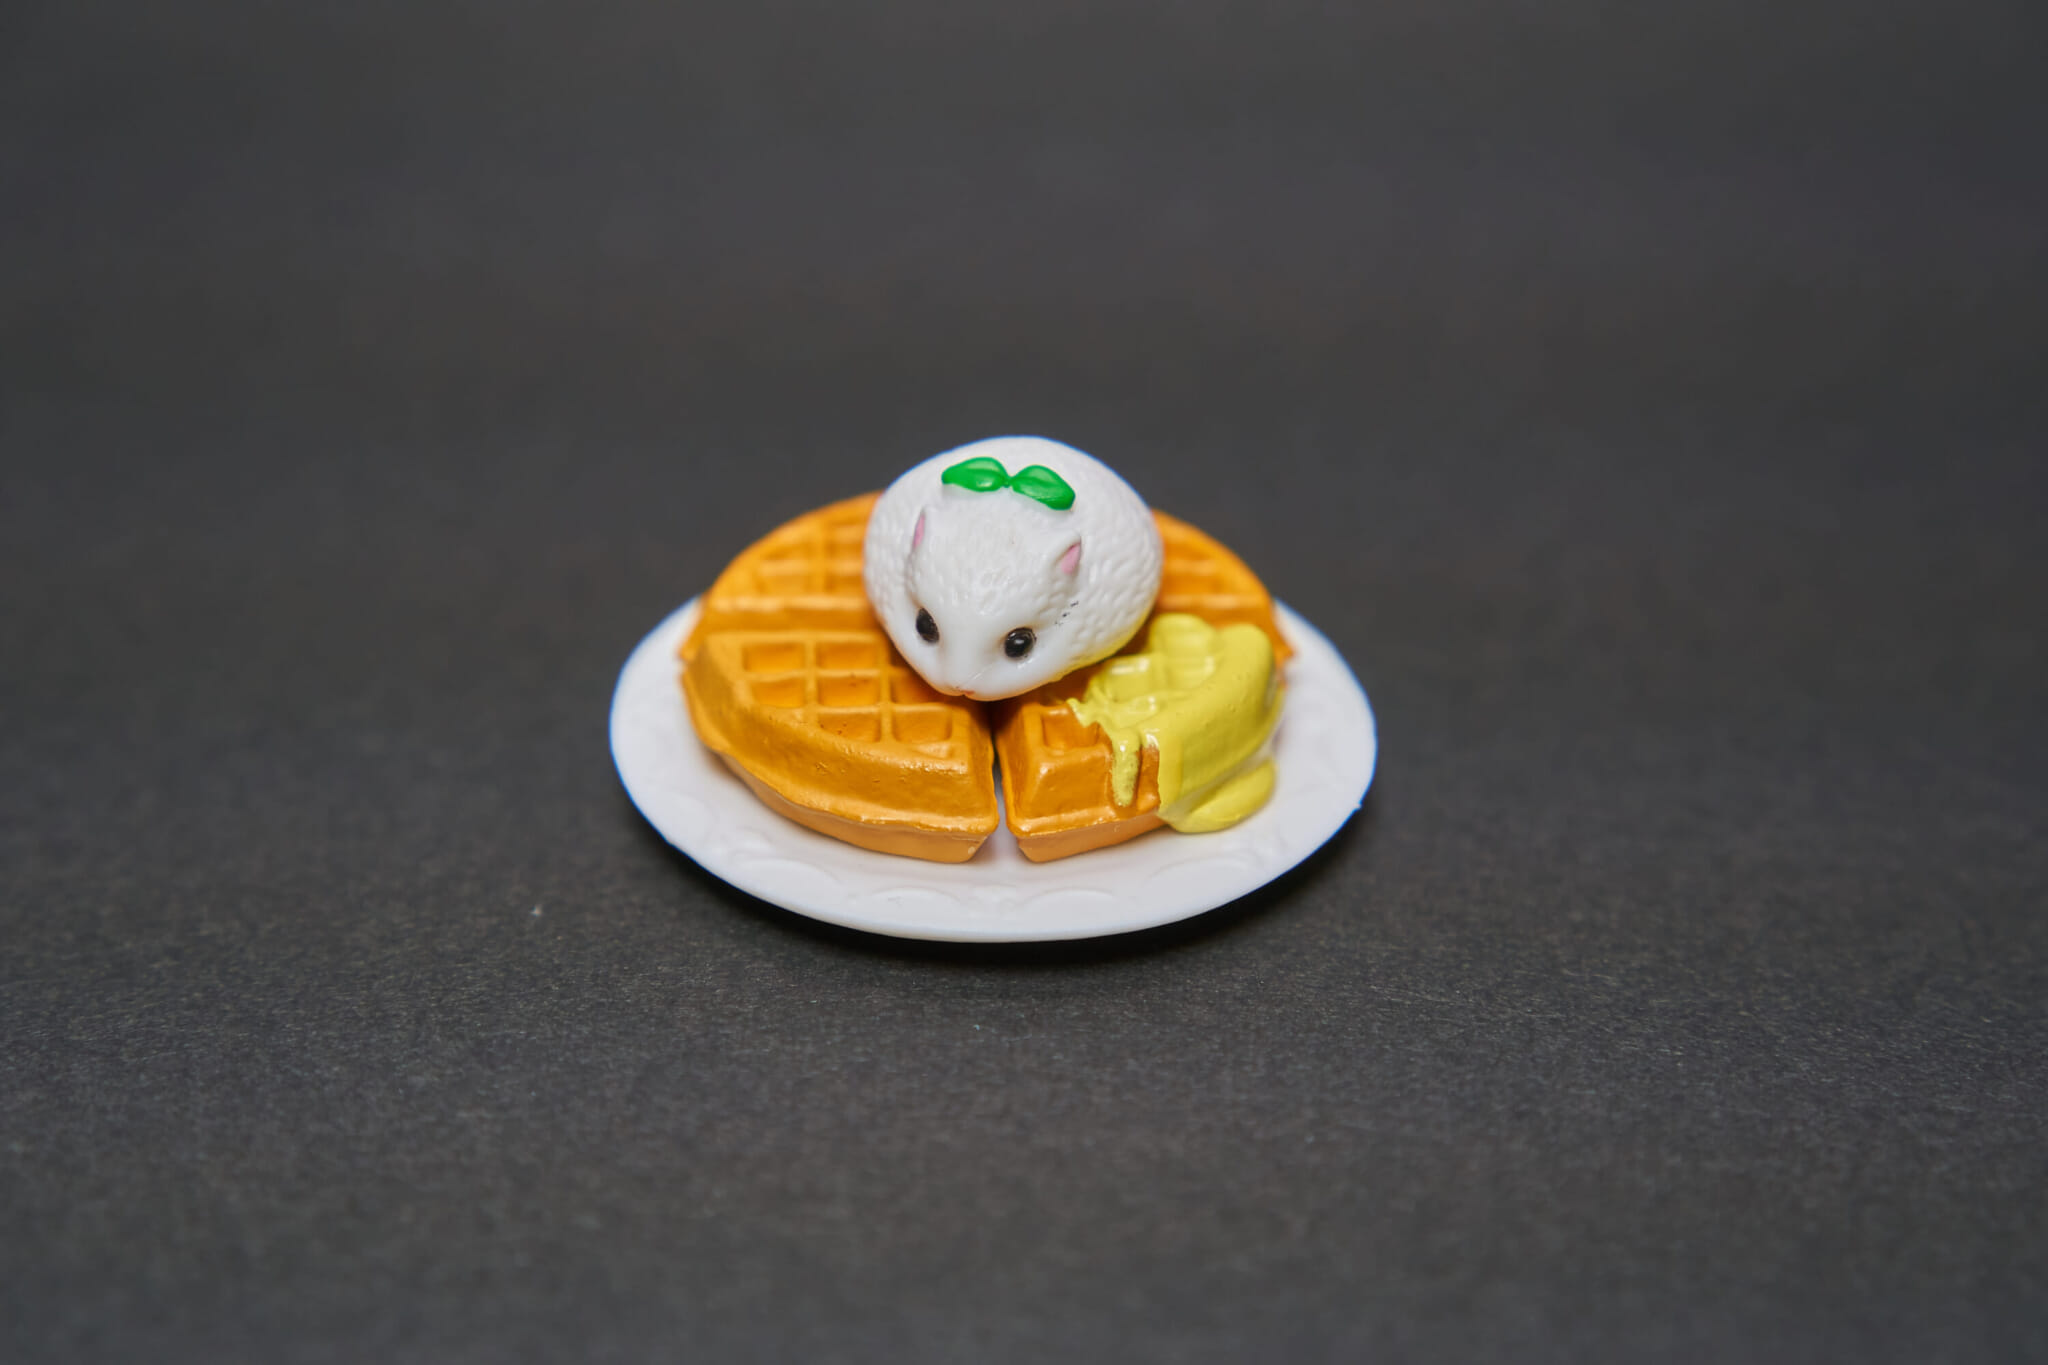 gachapon tiny mouse on waffle toy
